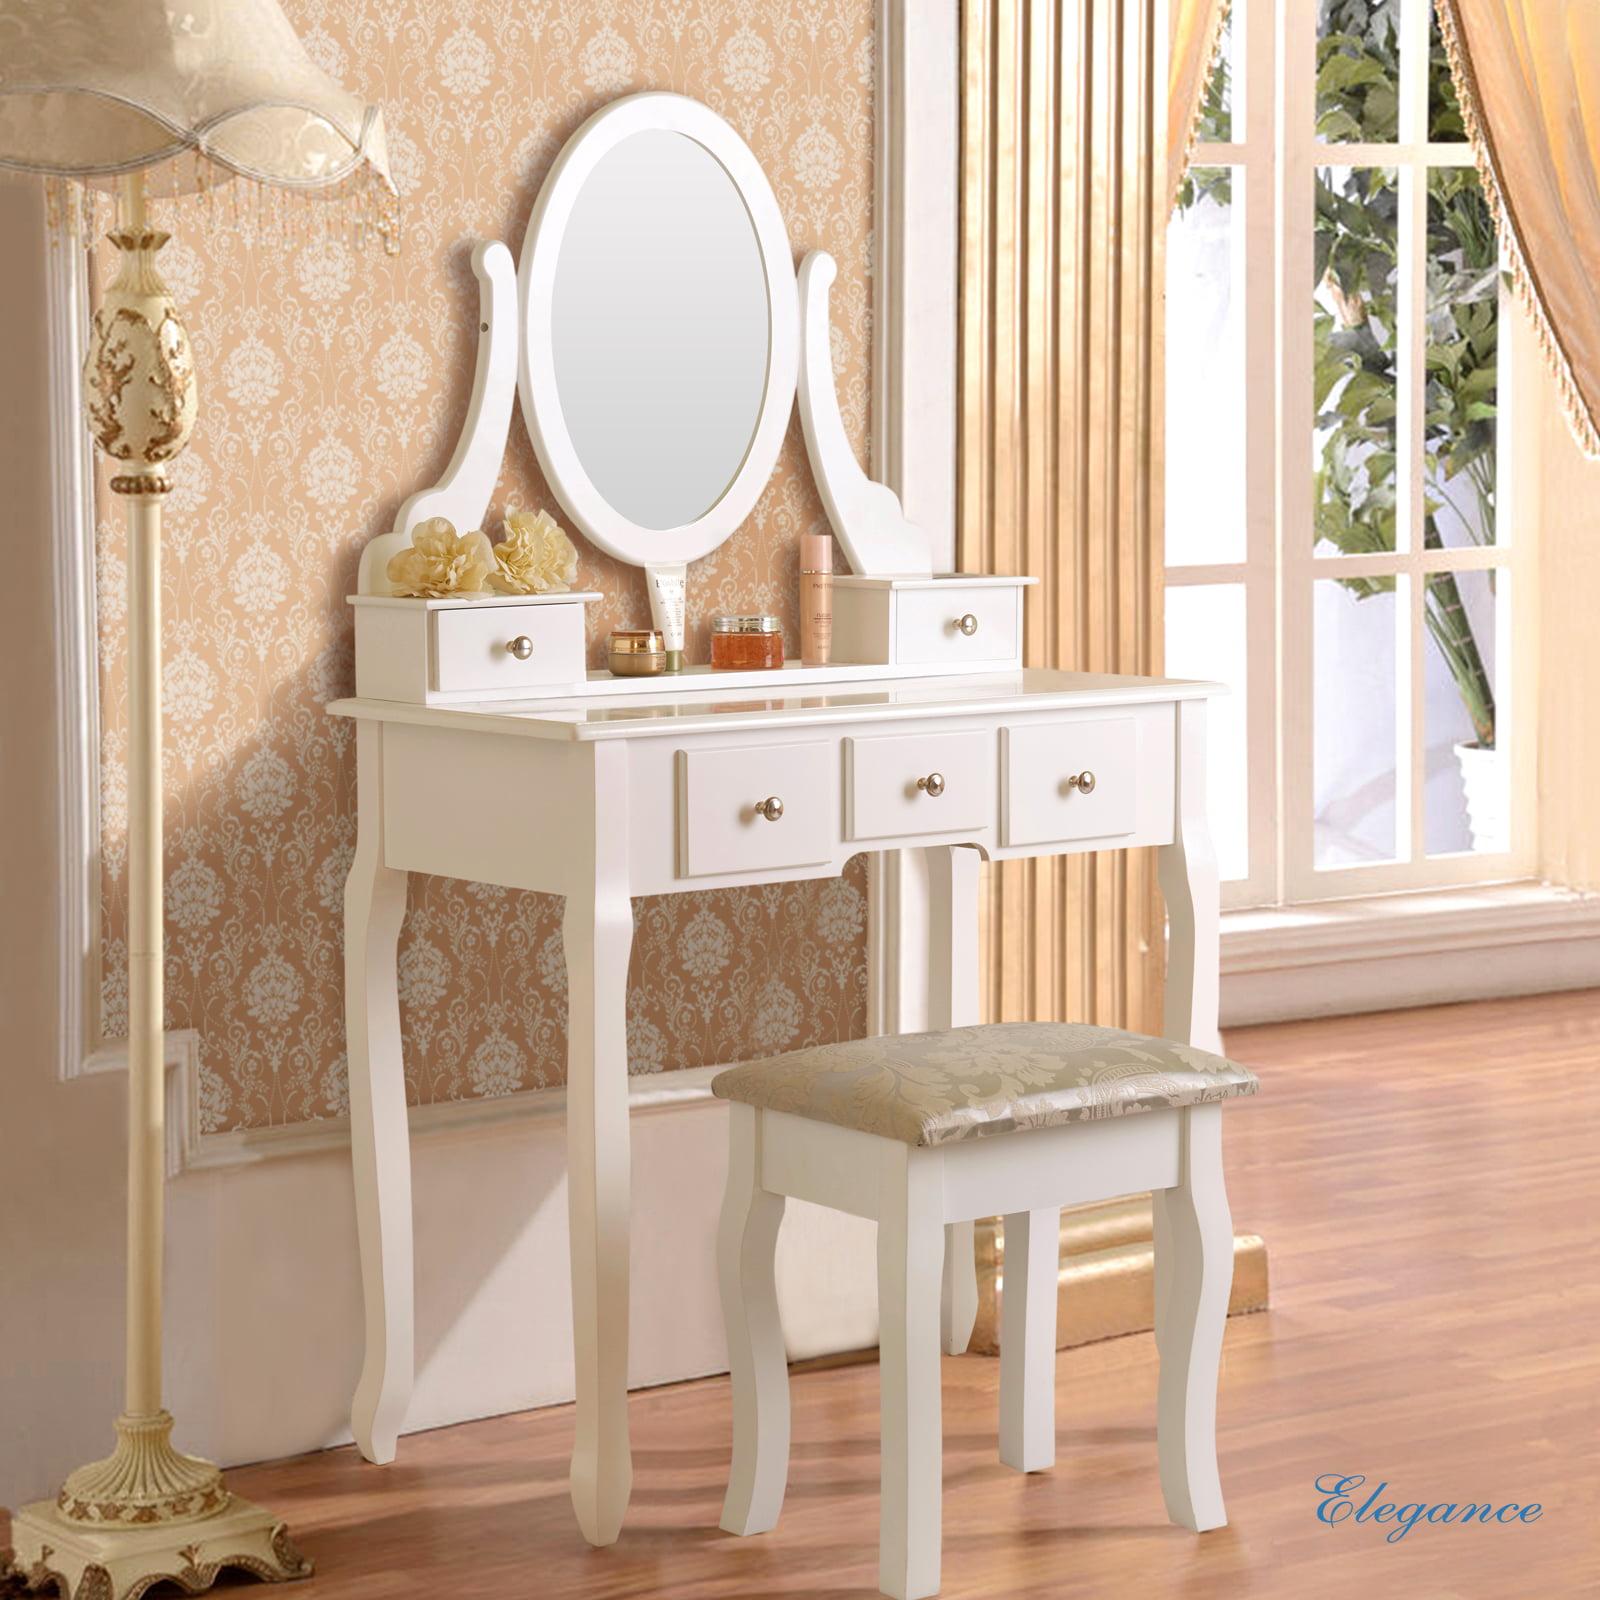 Uenjoy White Vanity Makeup Dressing Table Set w/Stool 5 Drawer&Mirror